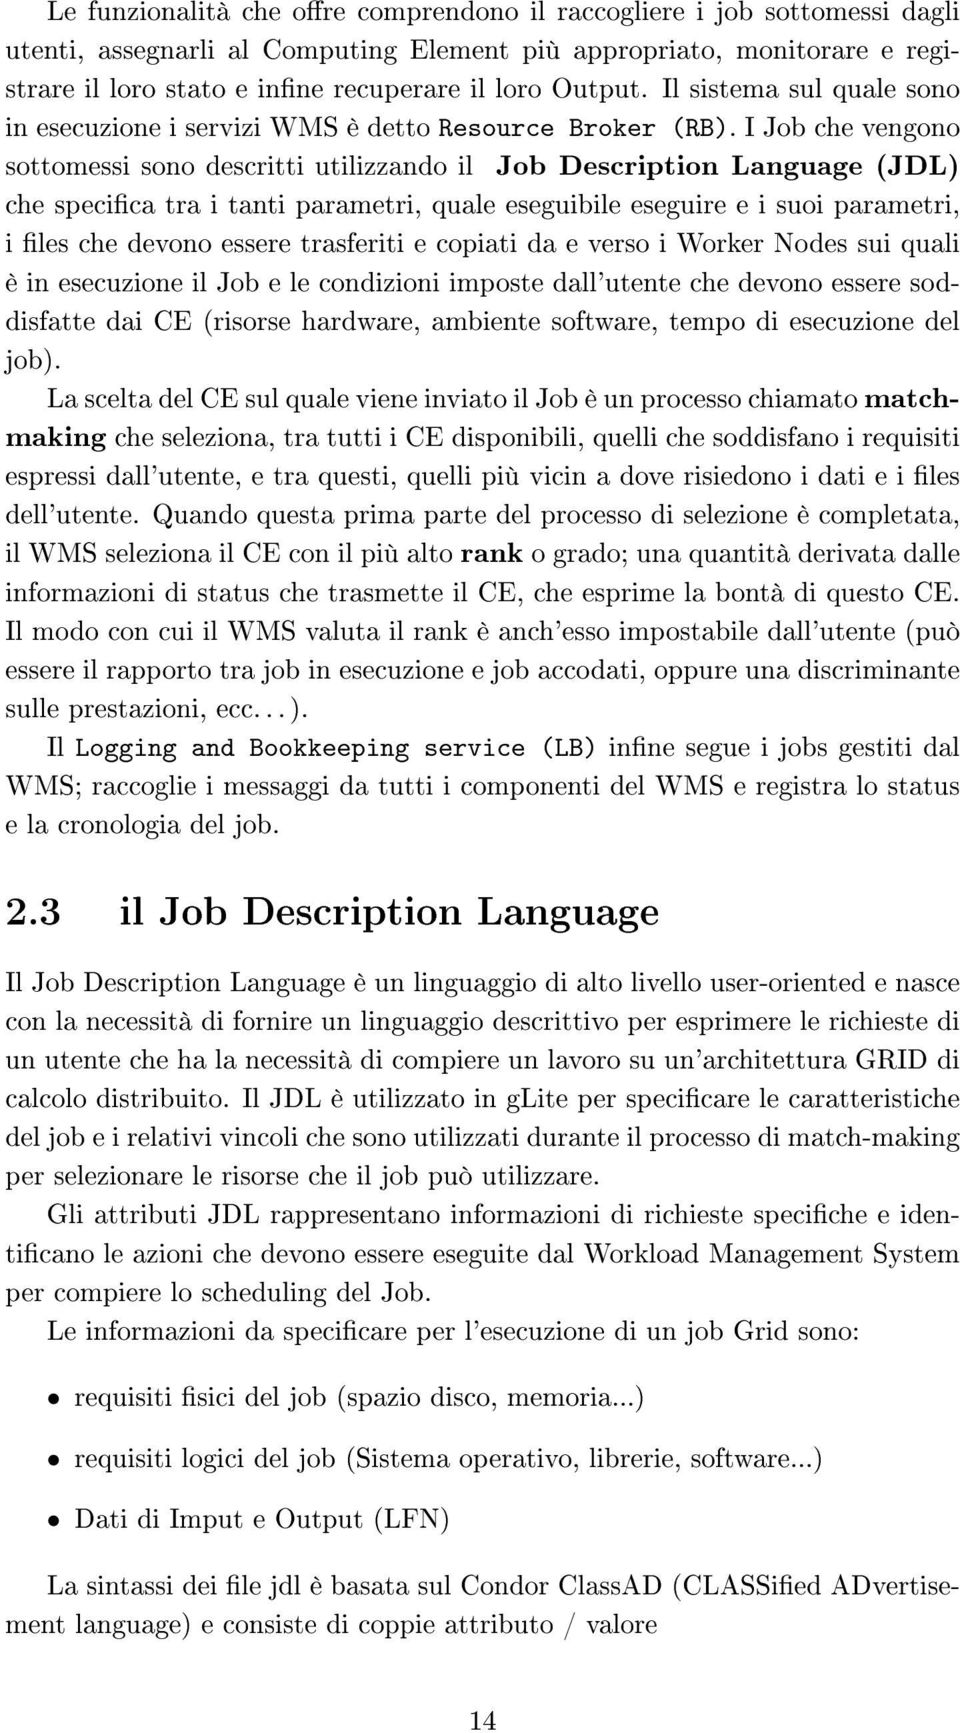 I Job che vengono sottomessi sono descritti utilizzando il Job Description Language (JDL) che specica tra i tanti parametri, quale eseguibile eseguire e i suoi parametri, i les che devono essere